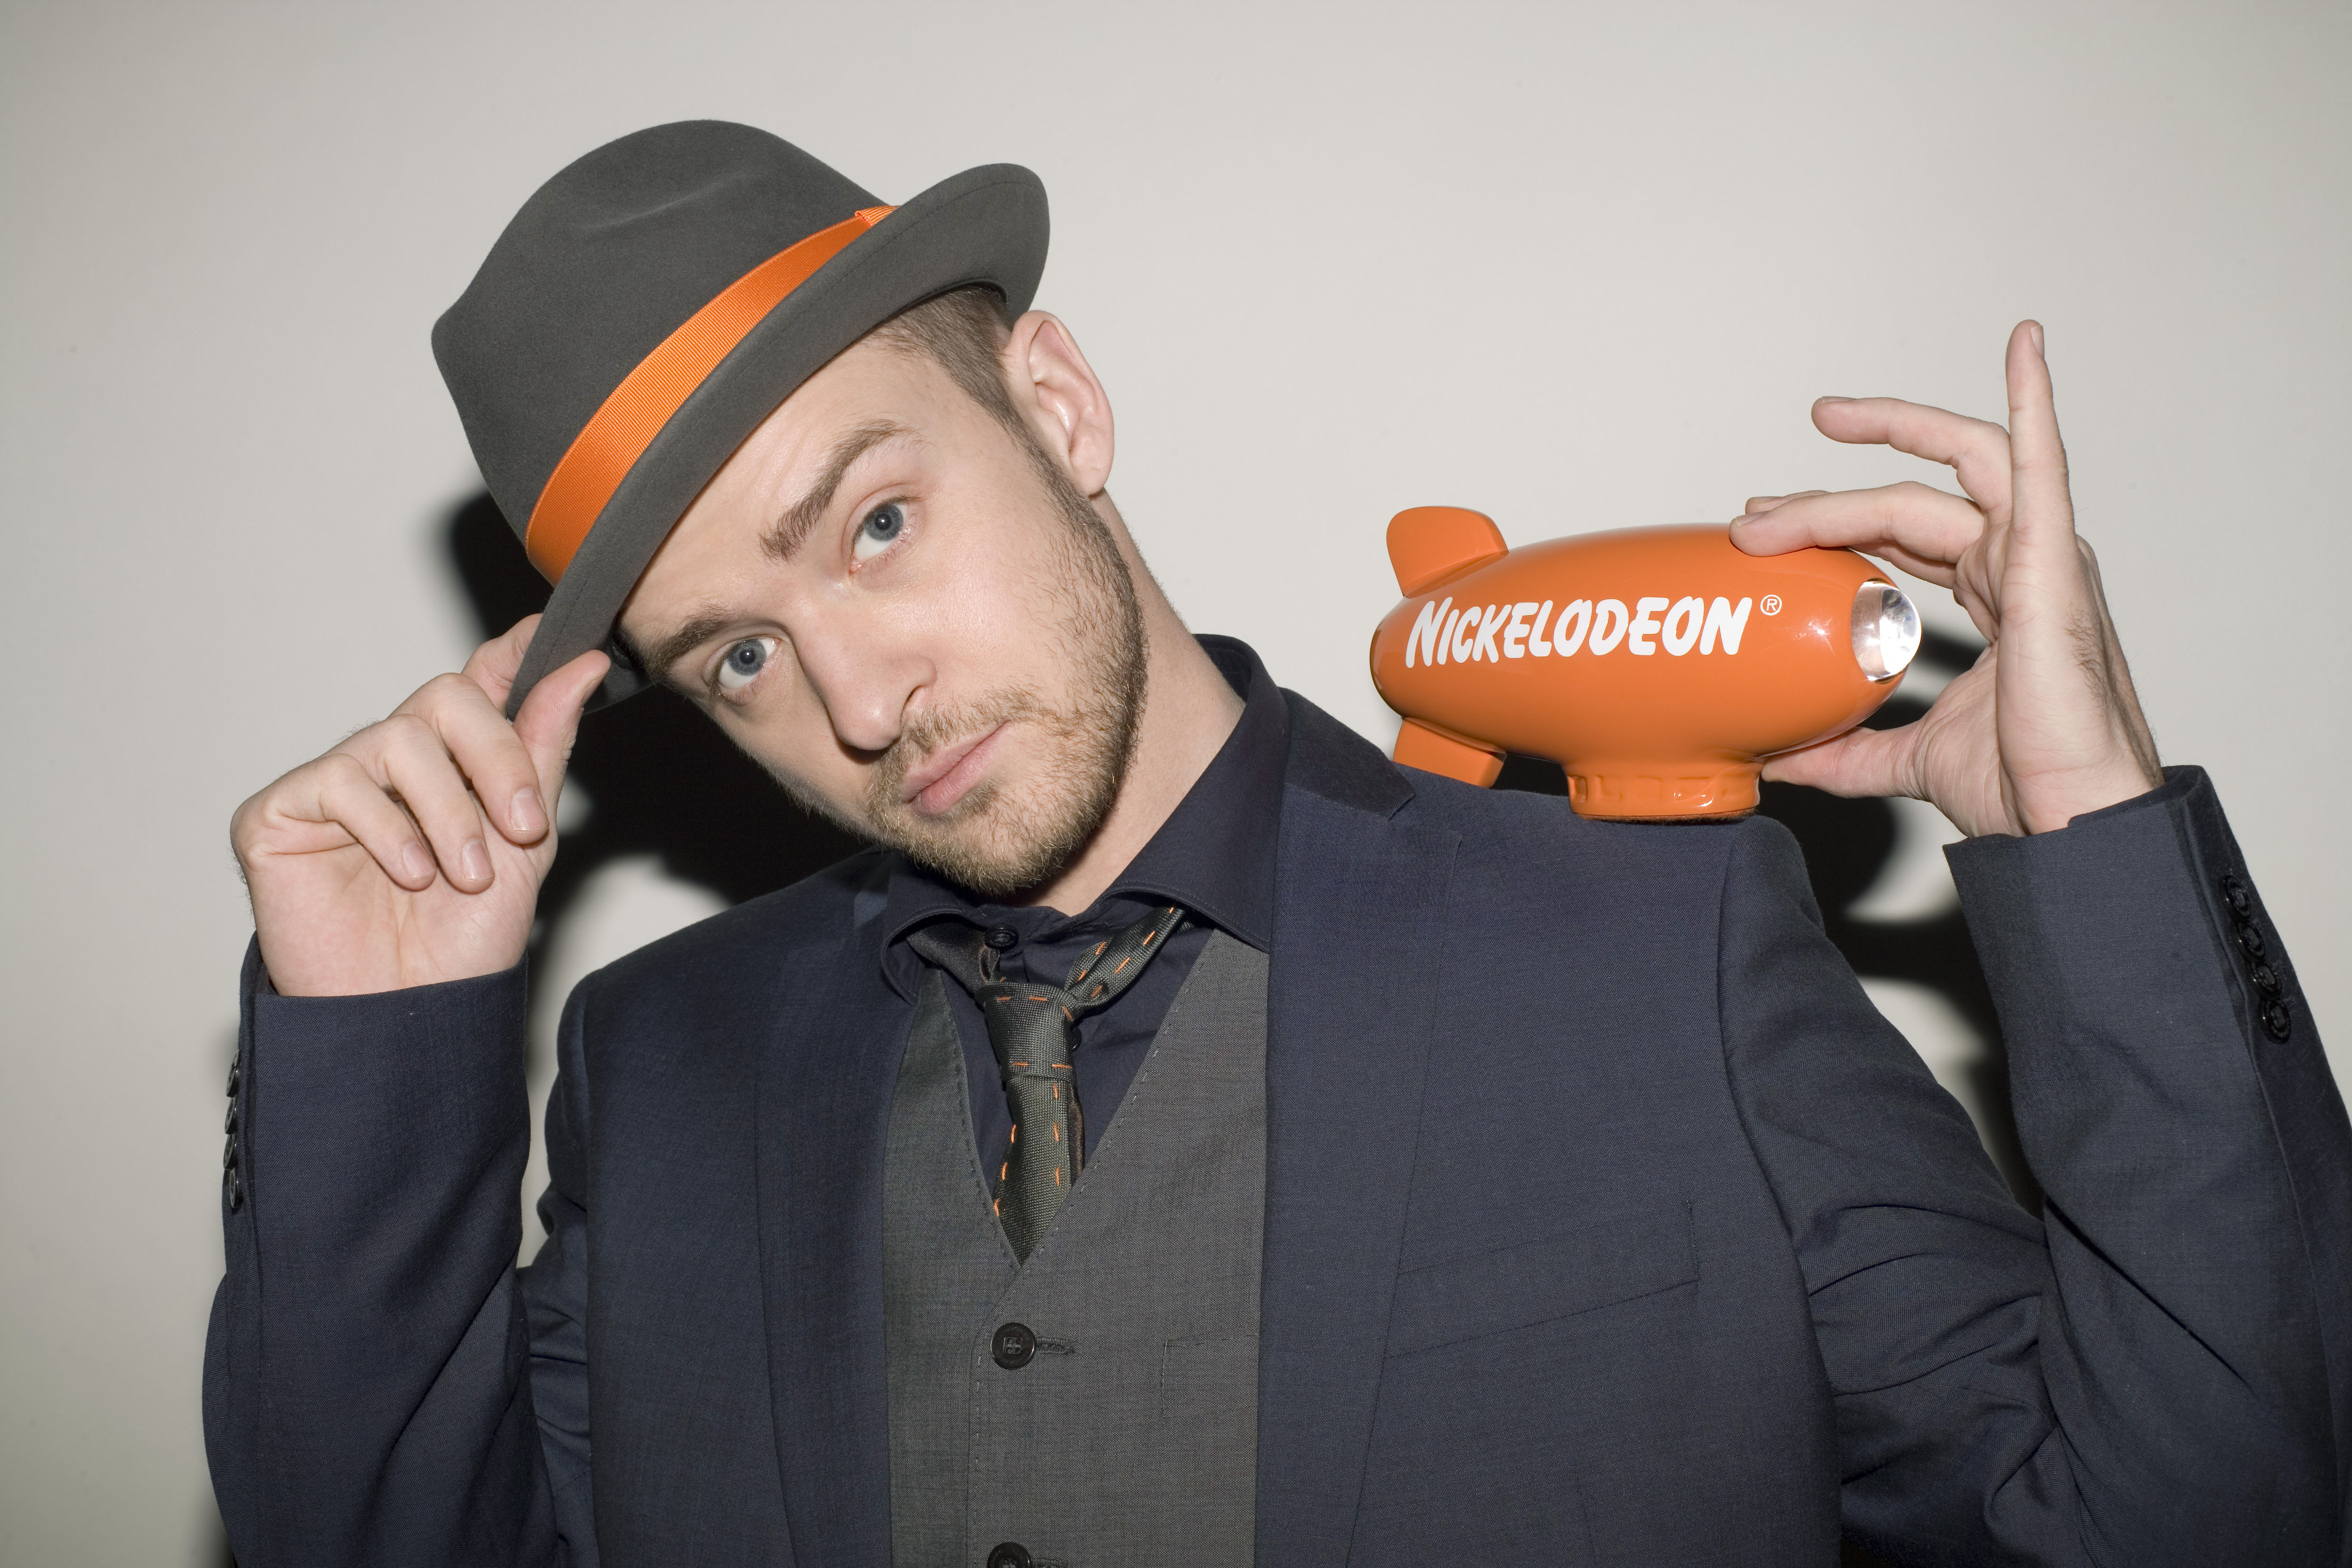 Justin Timberlake - Wikipedia